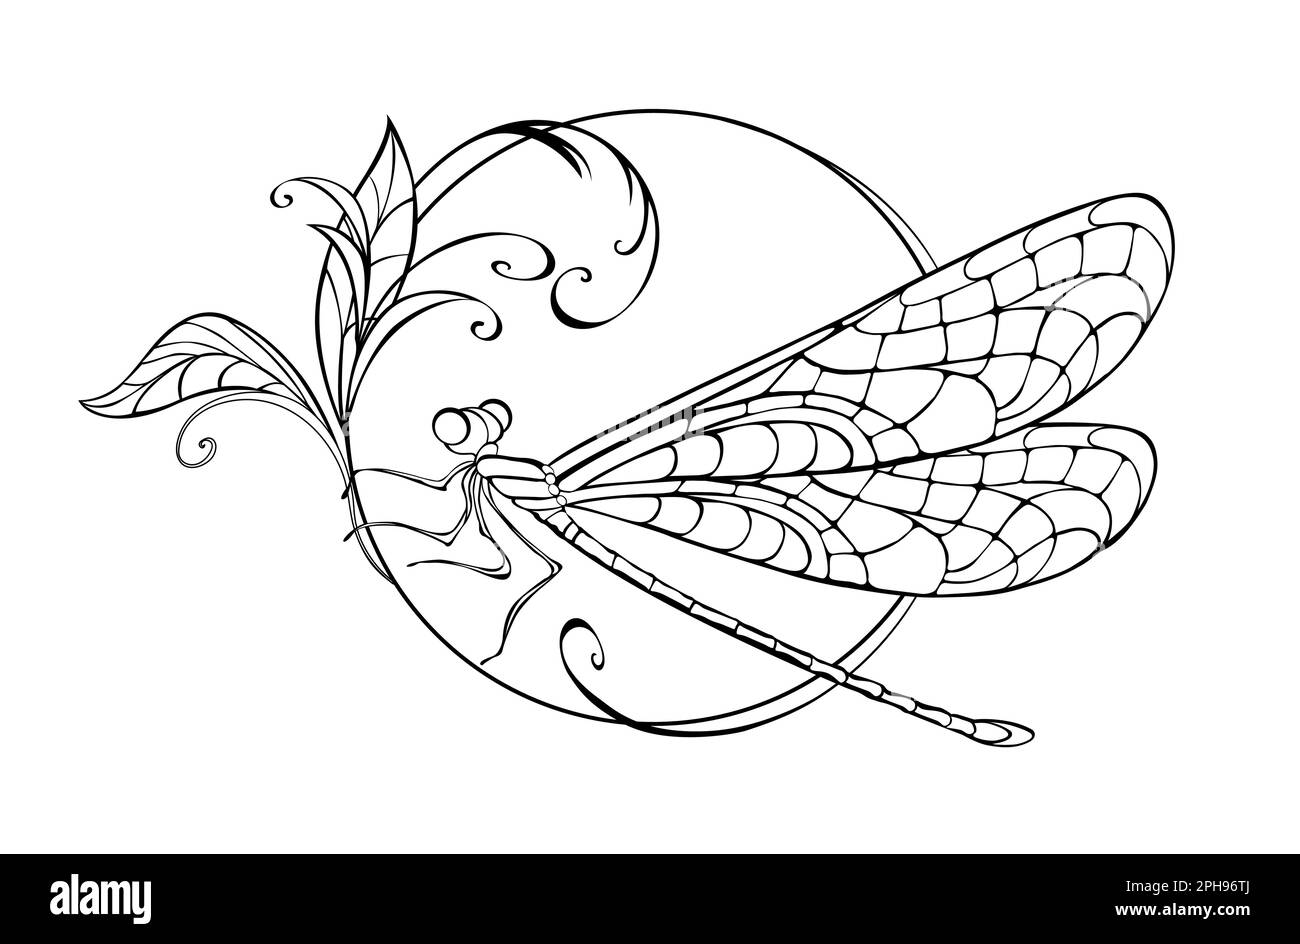 Seduto in cerchio, disegnata artisticamente, libellula contornata con ali dettagliate e a motivi geometrici su sfondo bianco. Il disegno originale della libellula. Illustrazione Vettoriale